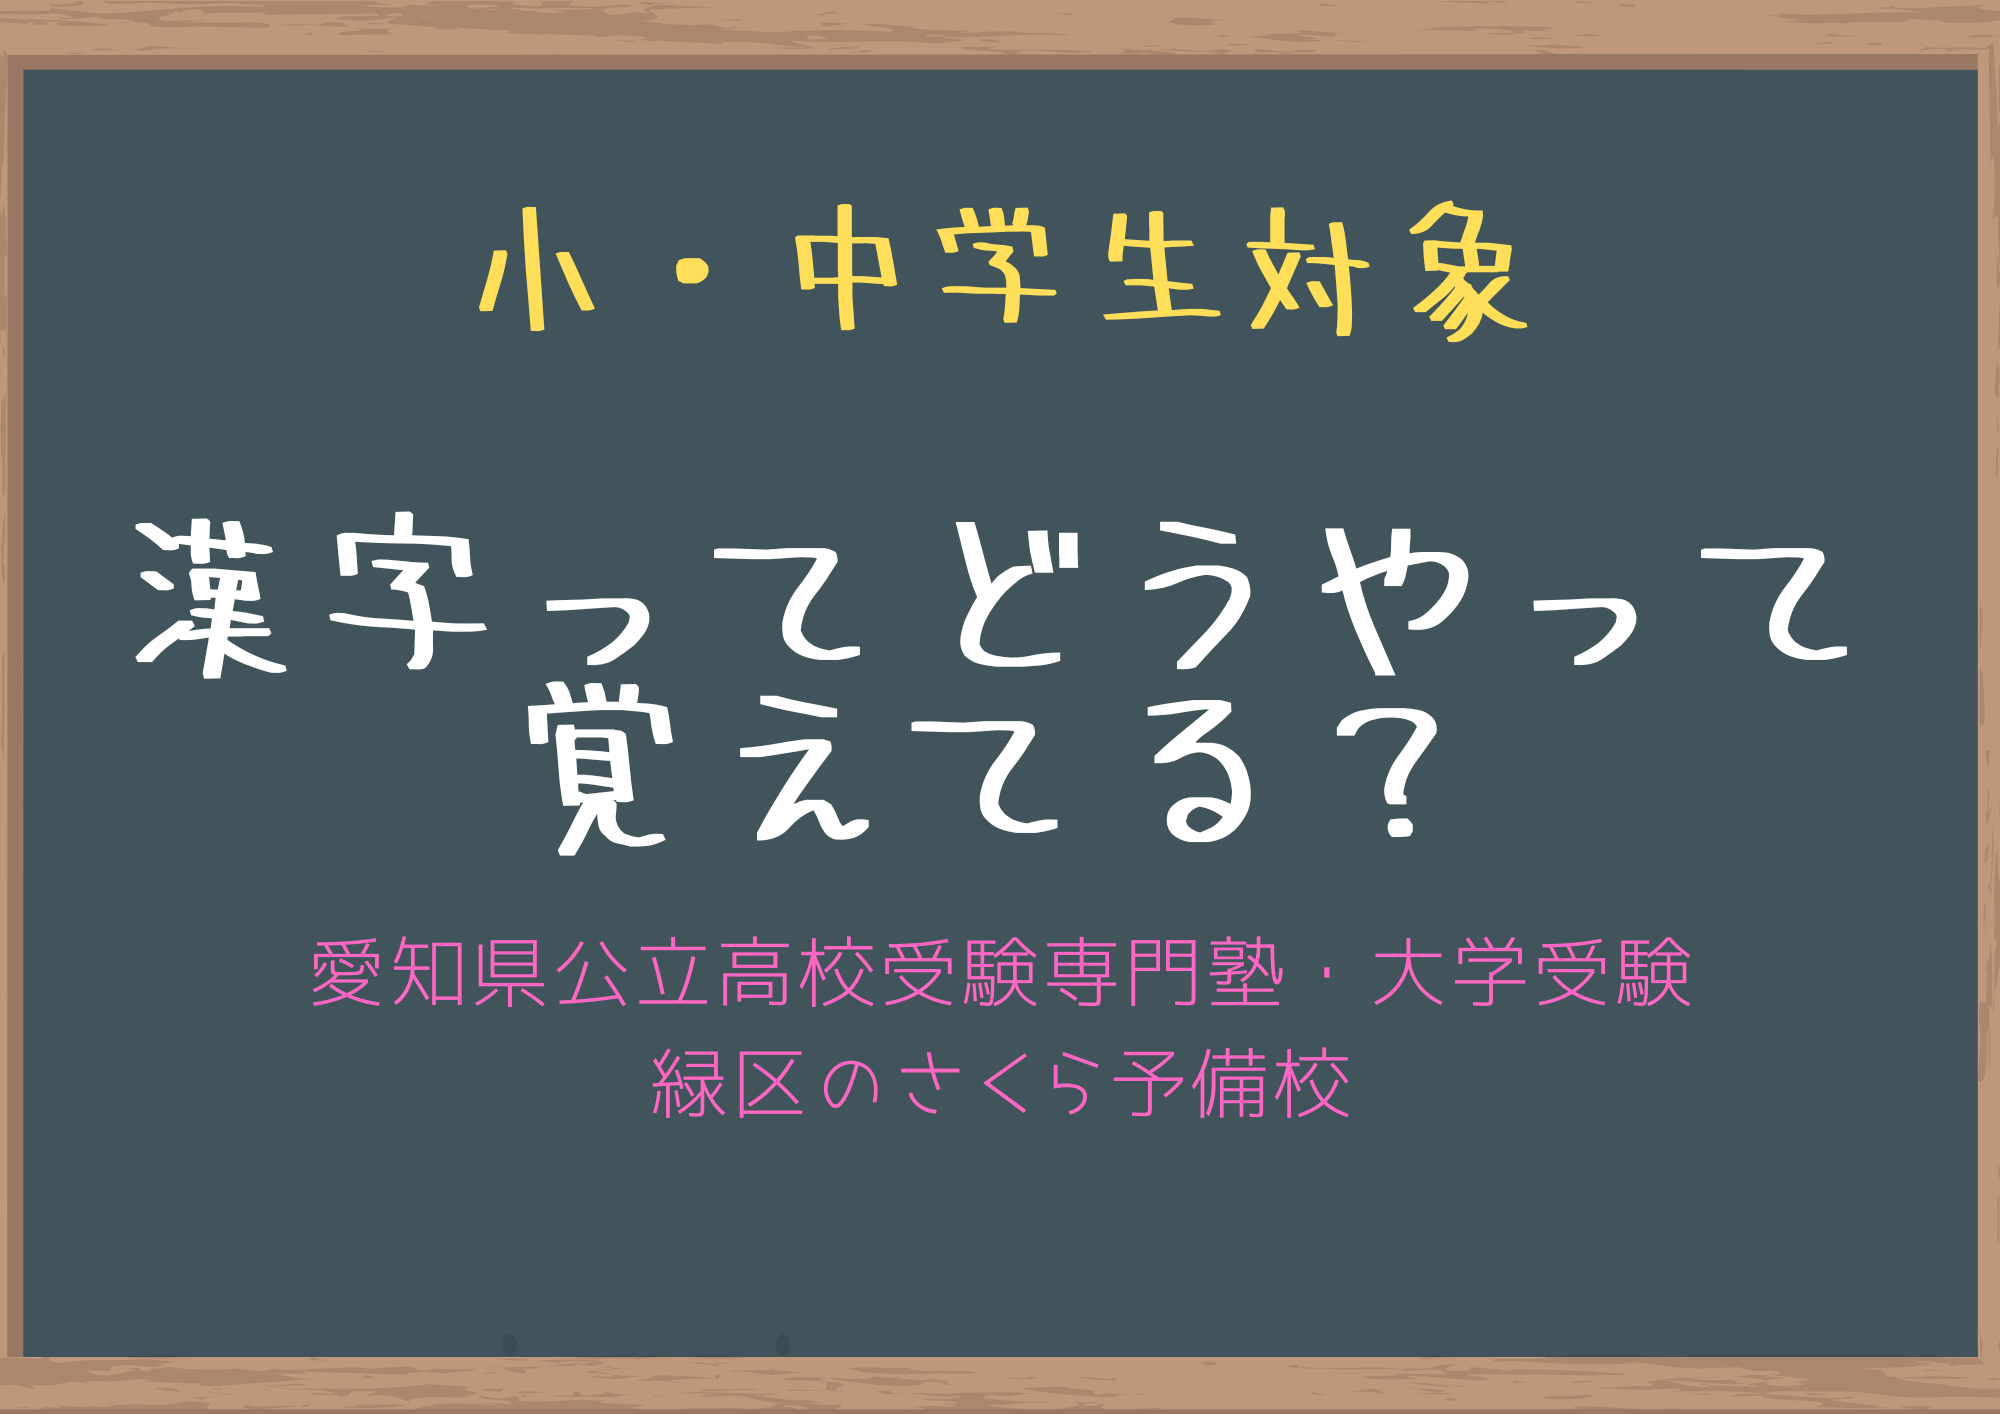 漢字は自分で文を作りながら書く練習をしないから忘れる 緑区の学習塾 愛知県公立高校受験専門 個別指導さくら予備校